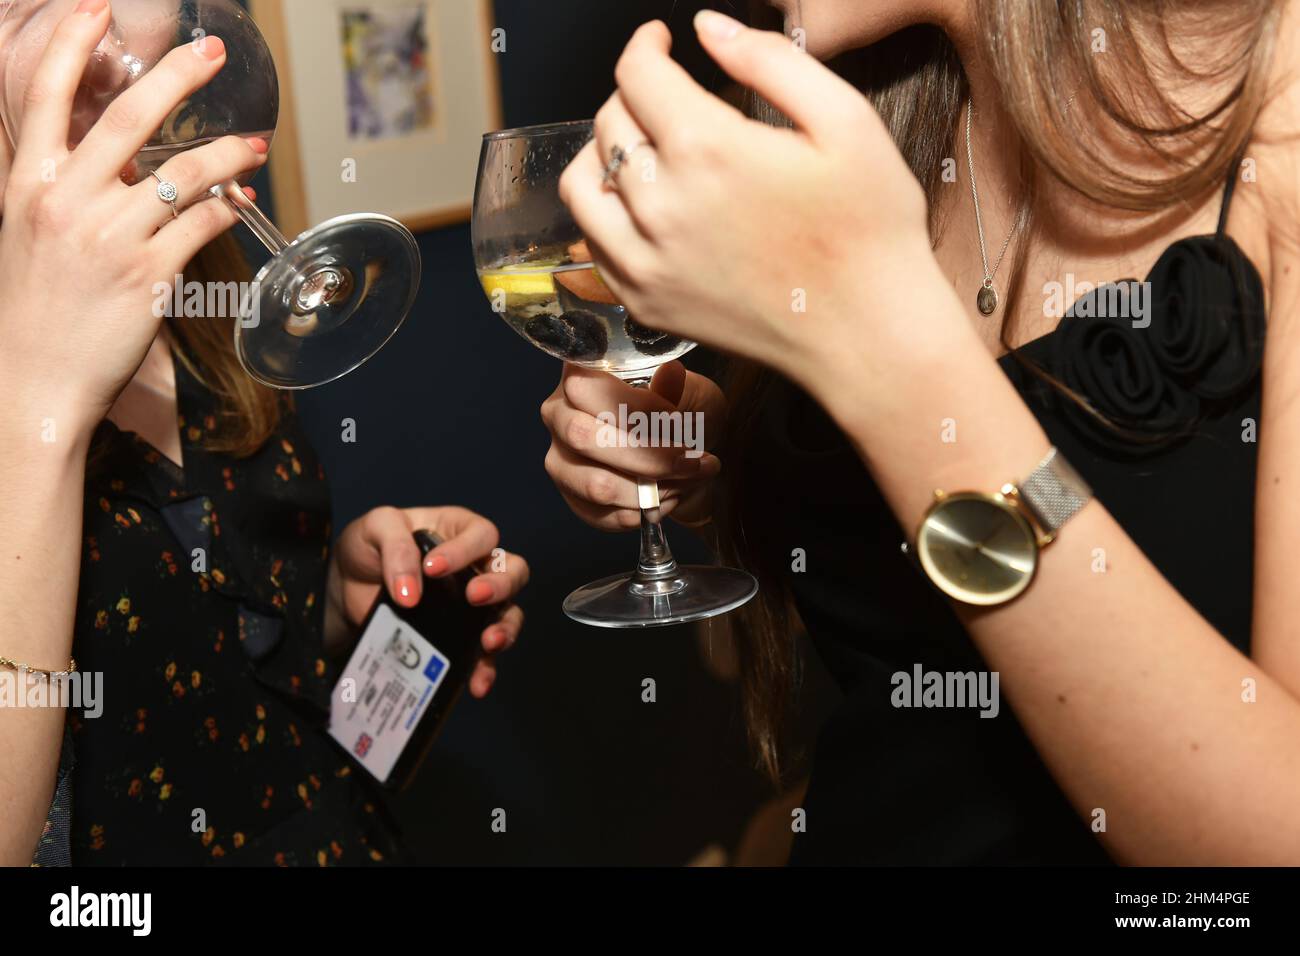 Une jeune femme boit du gin le soir, avec une carte d'identité Banque D'Images